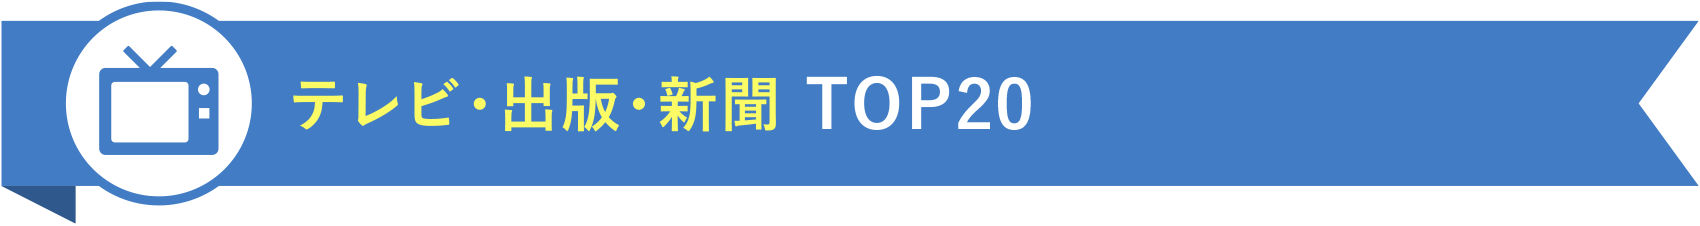 テレビ・出版・新聞 TOP20